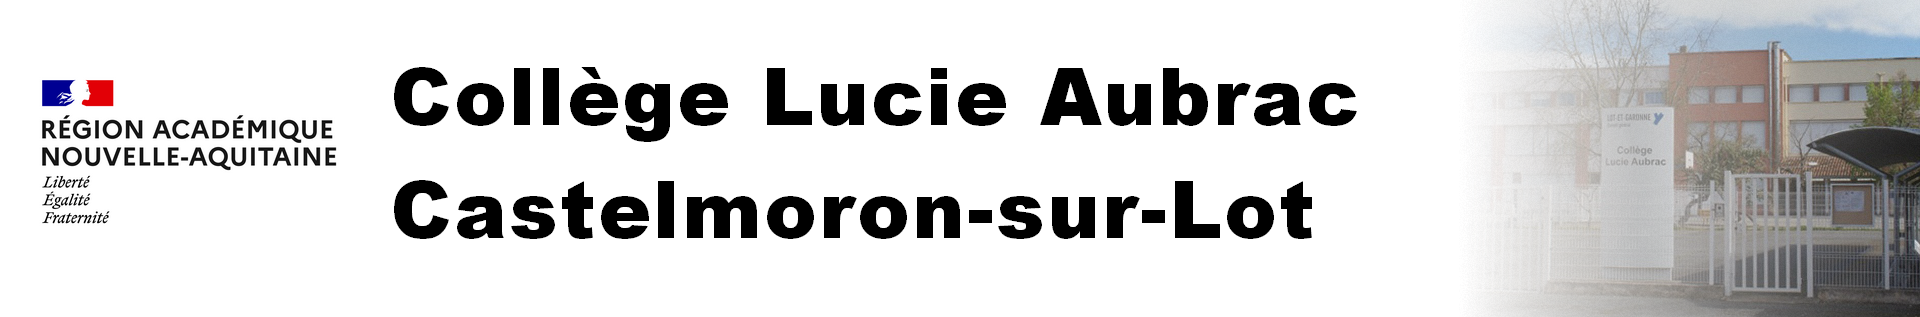 Headband Nouvelle Aquitaine - Collège Lucie Aubrac  - Castelmoron-sur-Lot